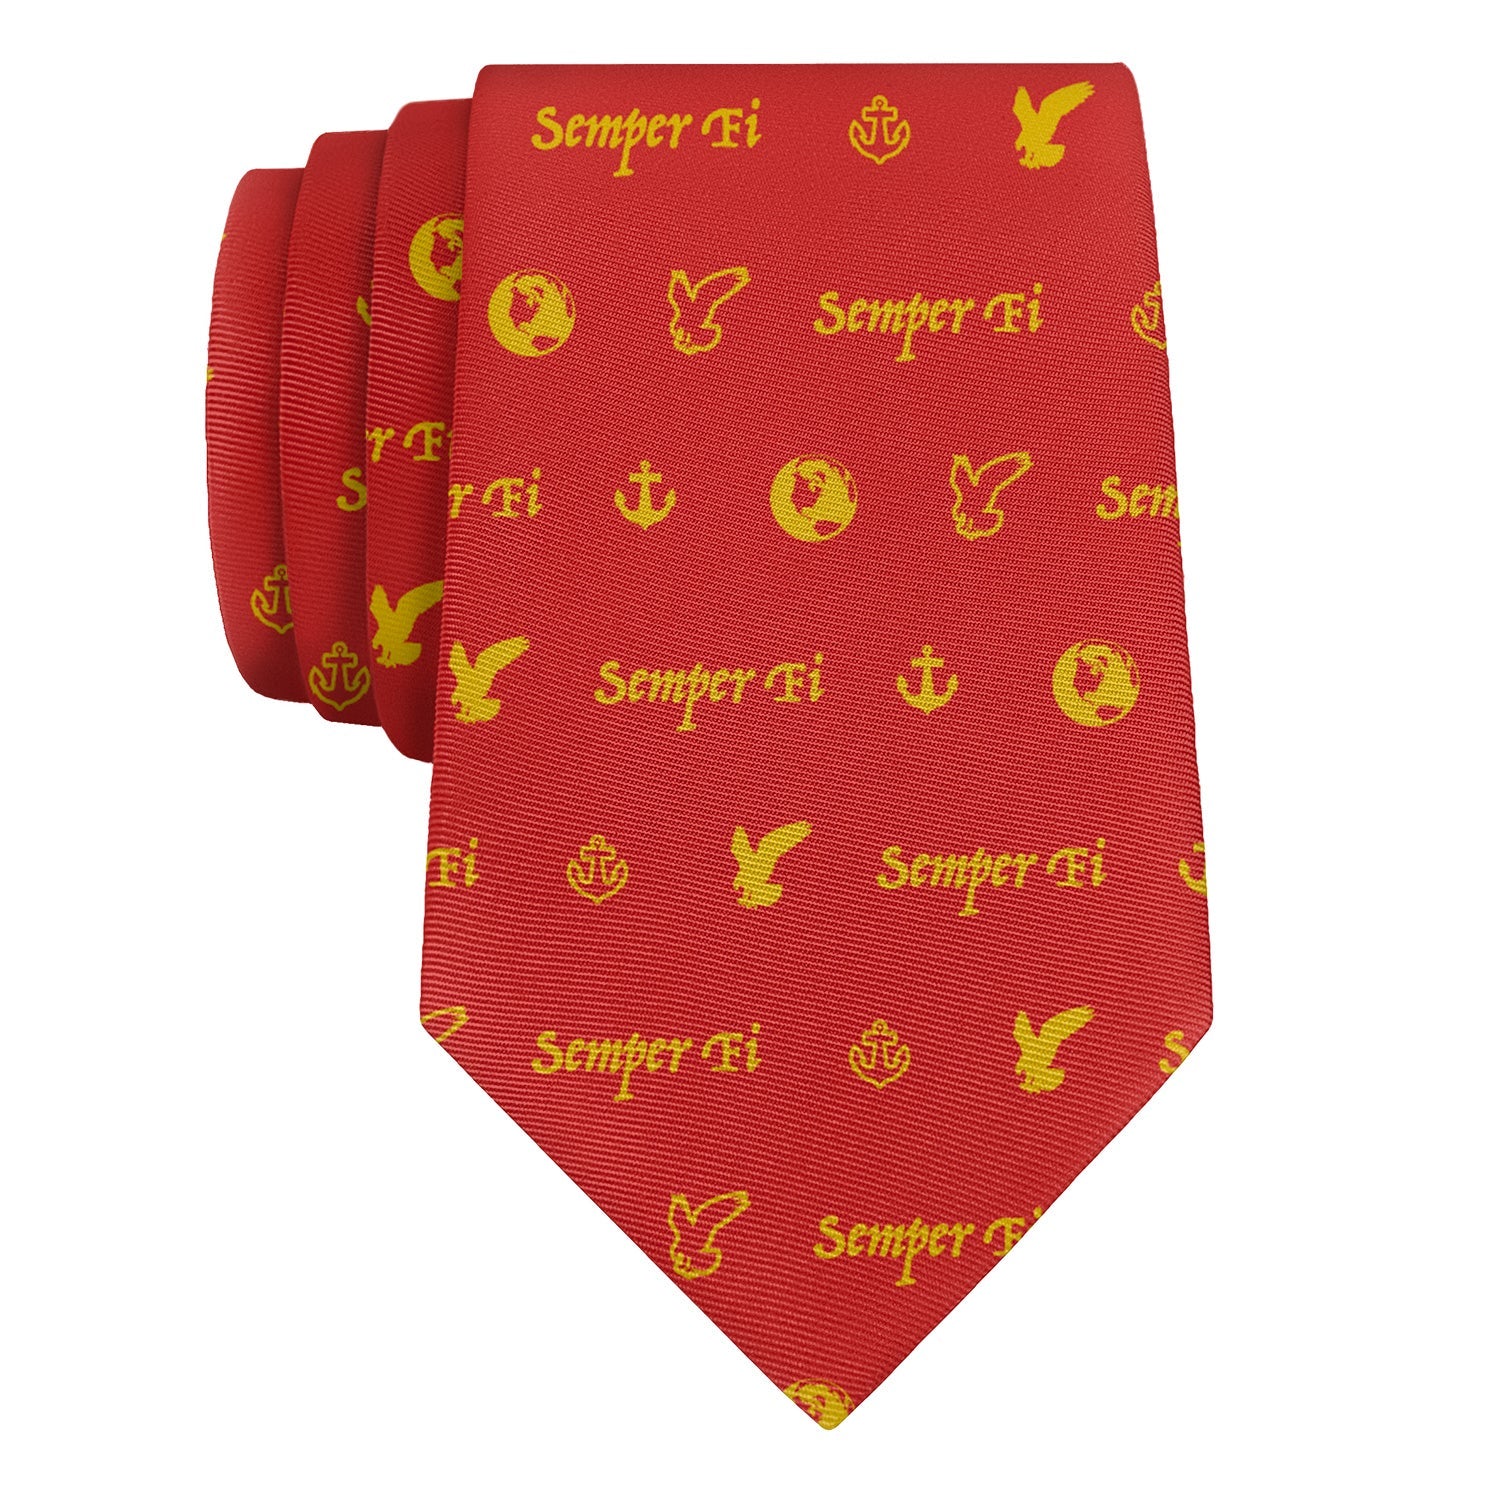 Semper Fi Necktie - Rolled - Knotty Tie Co.